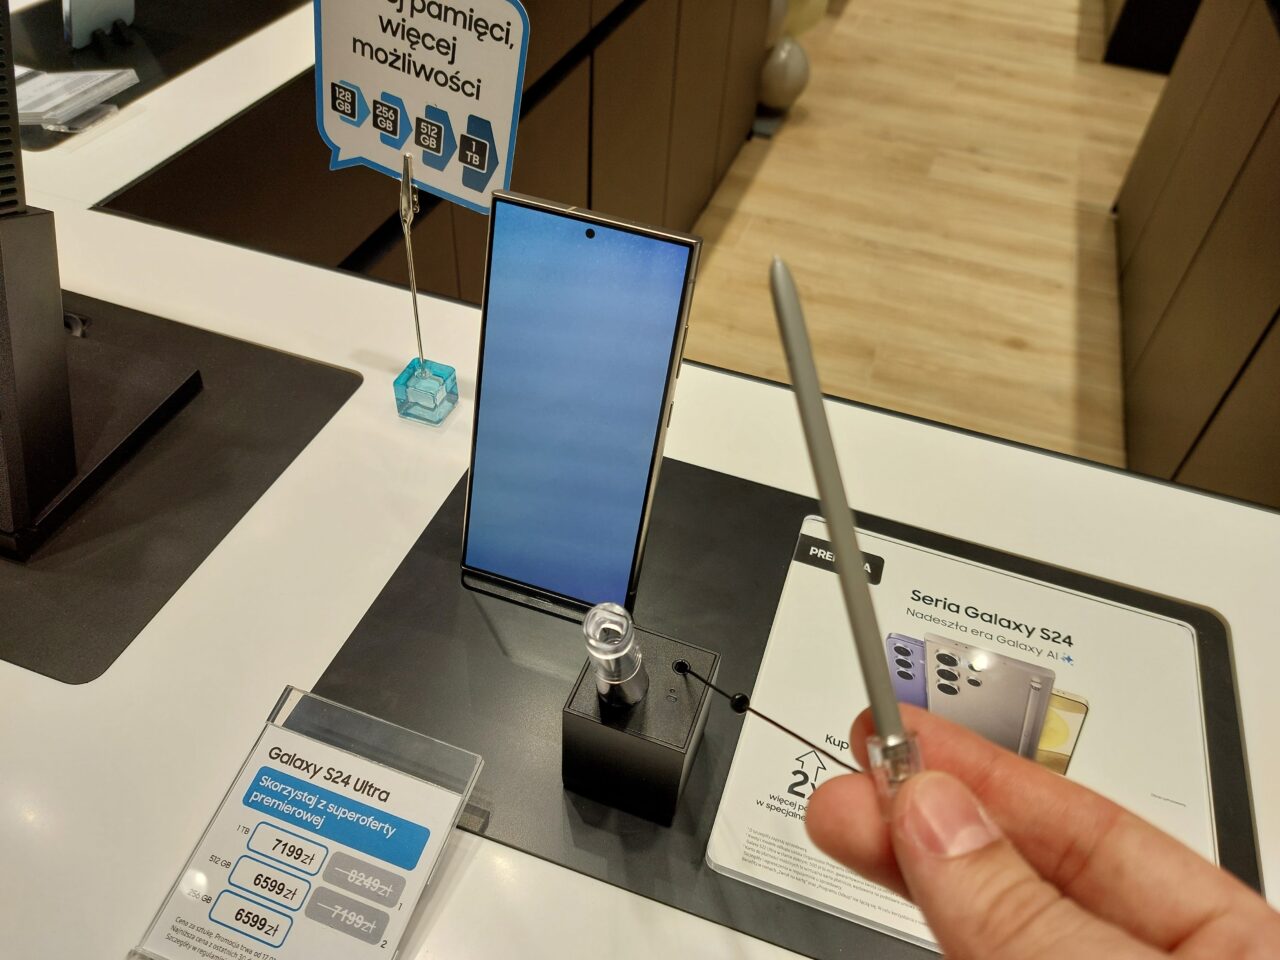 Smartfon Galaxy S24 Ultra wystawiony w sklepie, zabezpieczony przeciwdziałającym kradzieży urządzeniem, obok karty informacyjnej z ceną i specyfikacją oraz długopisem dotykowym trzymanym przez osobę robiącą zdjęcie.